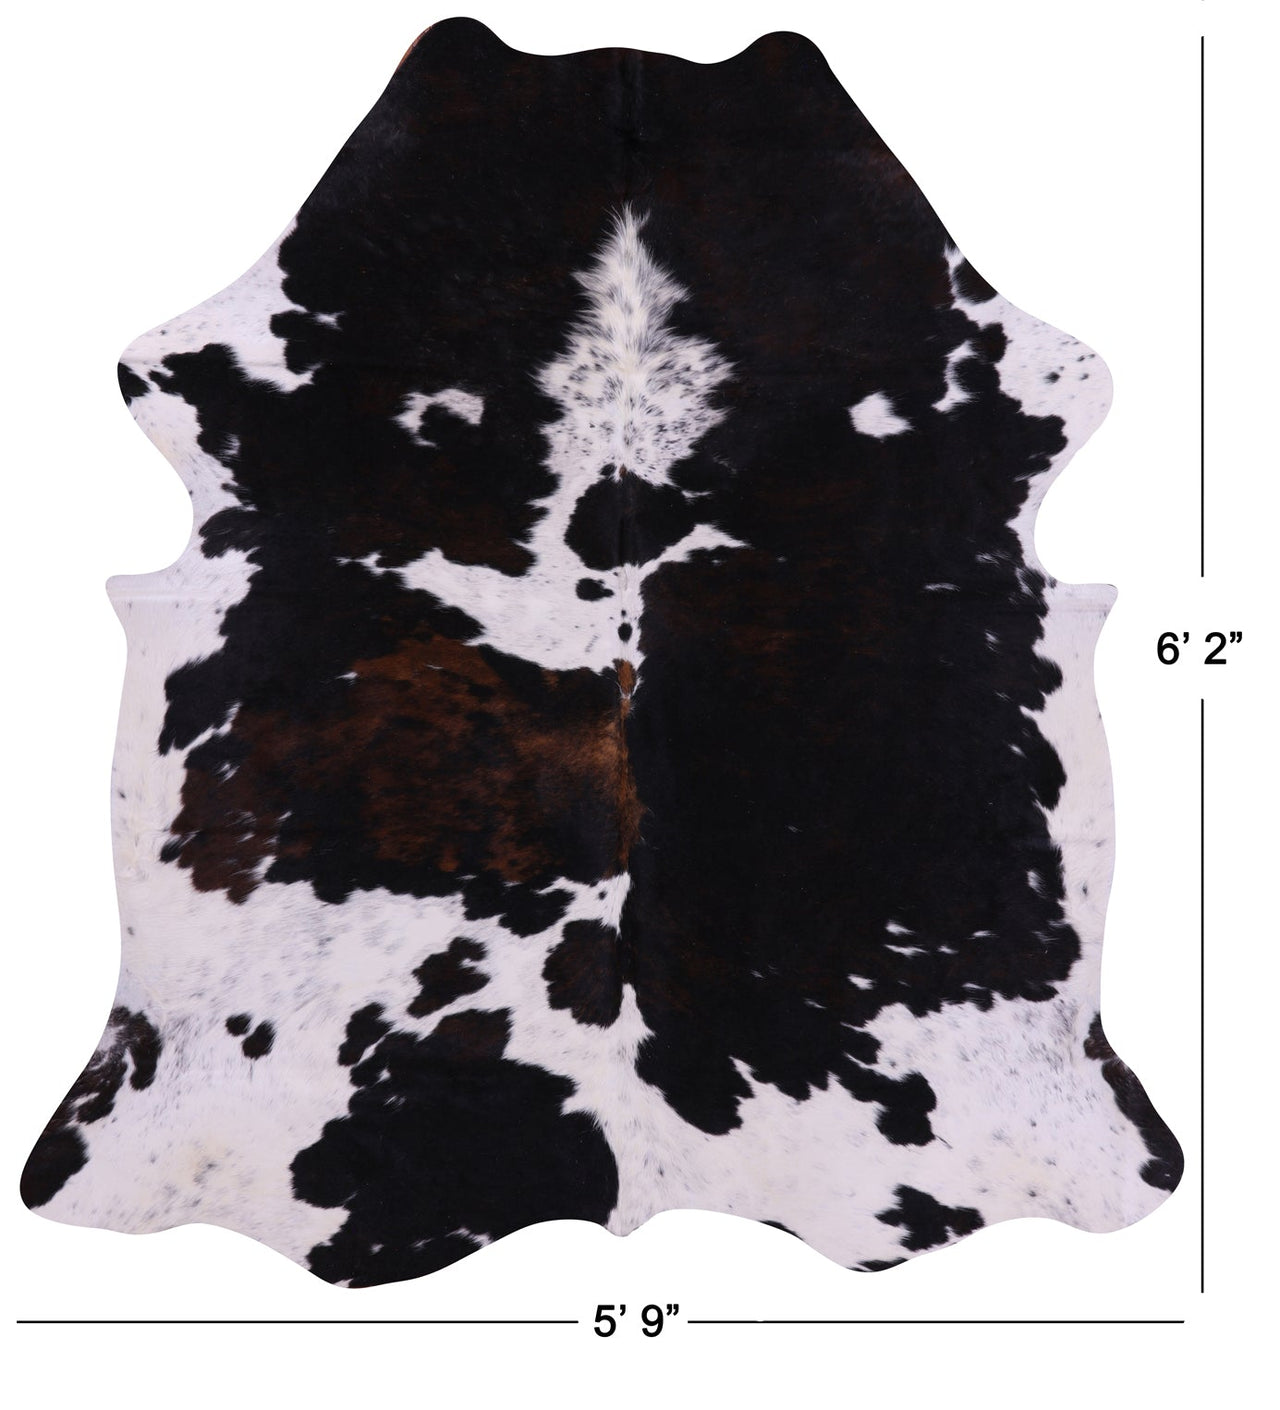 Black & White Natural Cowhide Rug - Medium 6'2"H x 5'9"W